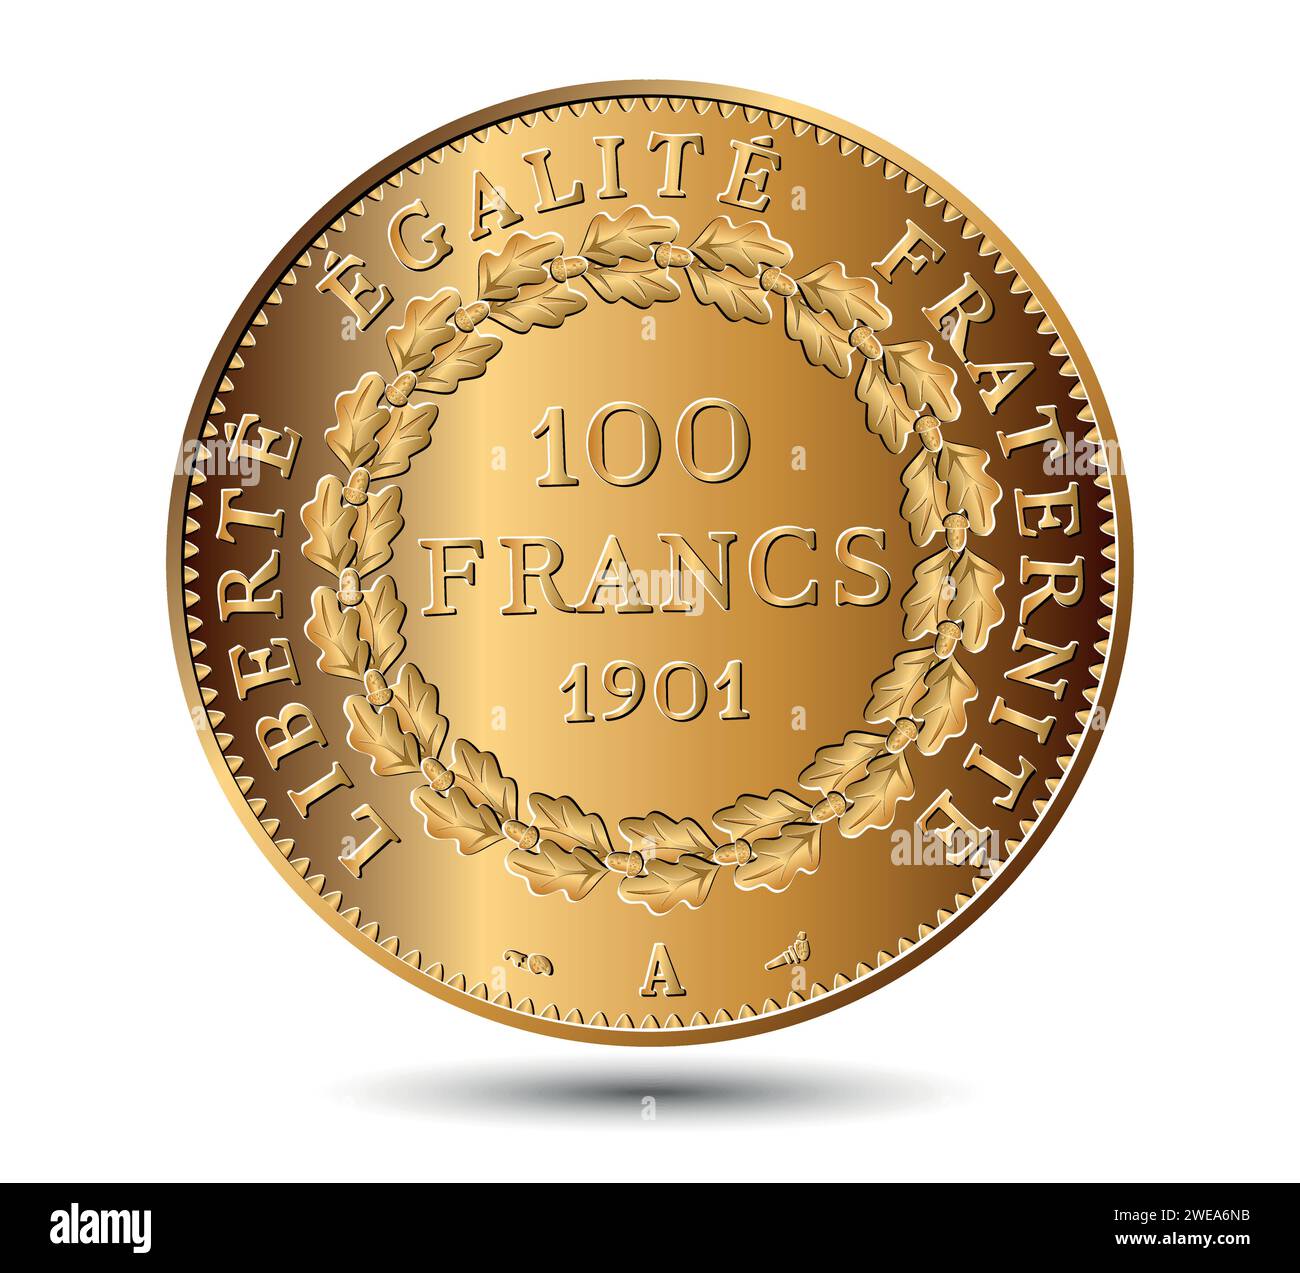 Moneta da 100 franchi in oro francese, isolata su sfondo bianco. Illustrazione vettoriale. Illustrazione Vettoriale